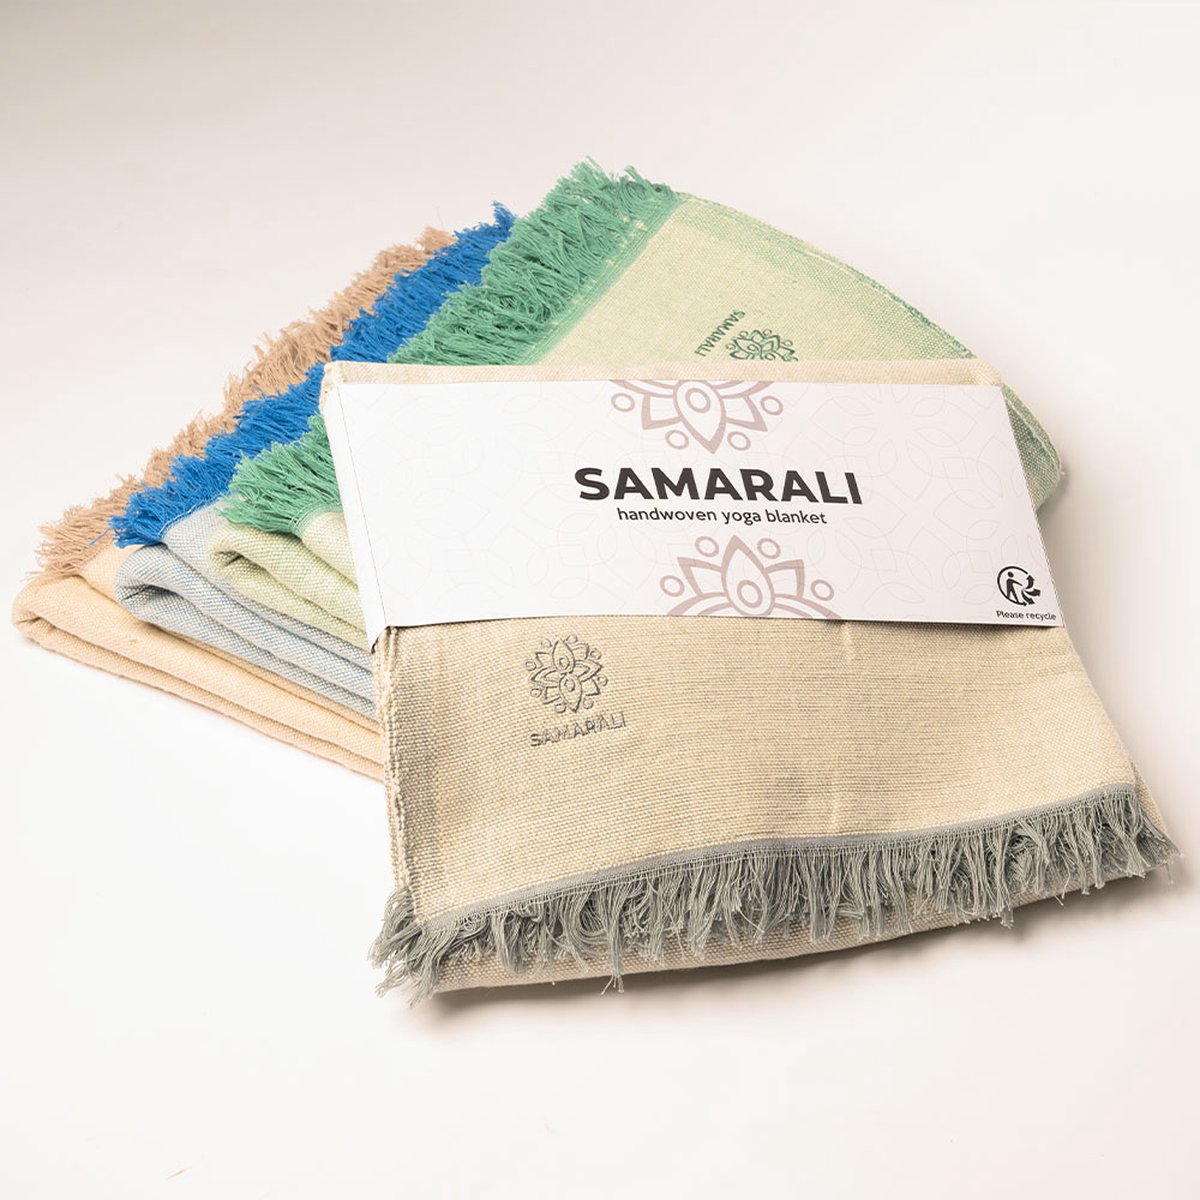 Samarali Yoga deken - Chambray beige - 100% biologisch katoen - 200x150 cm - Meditatiedeken - Handgemaakt - Comfortabel & veelzijdig